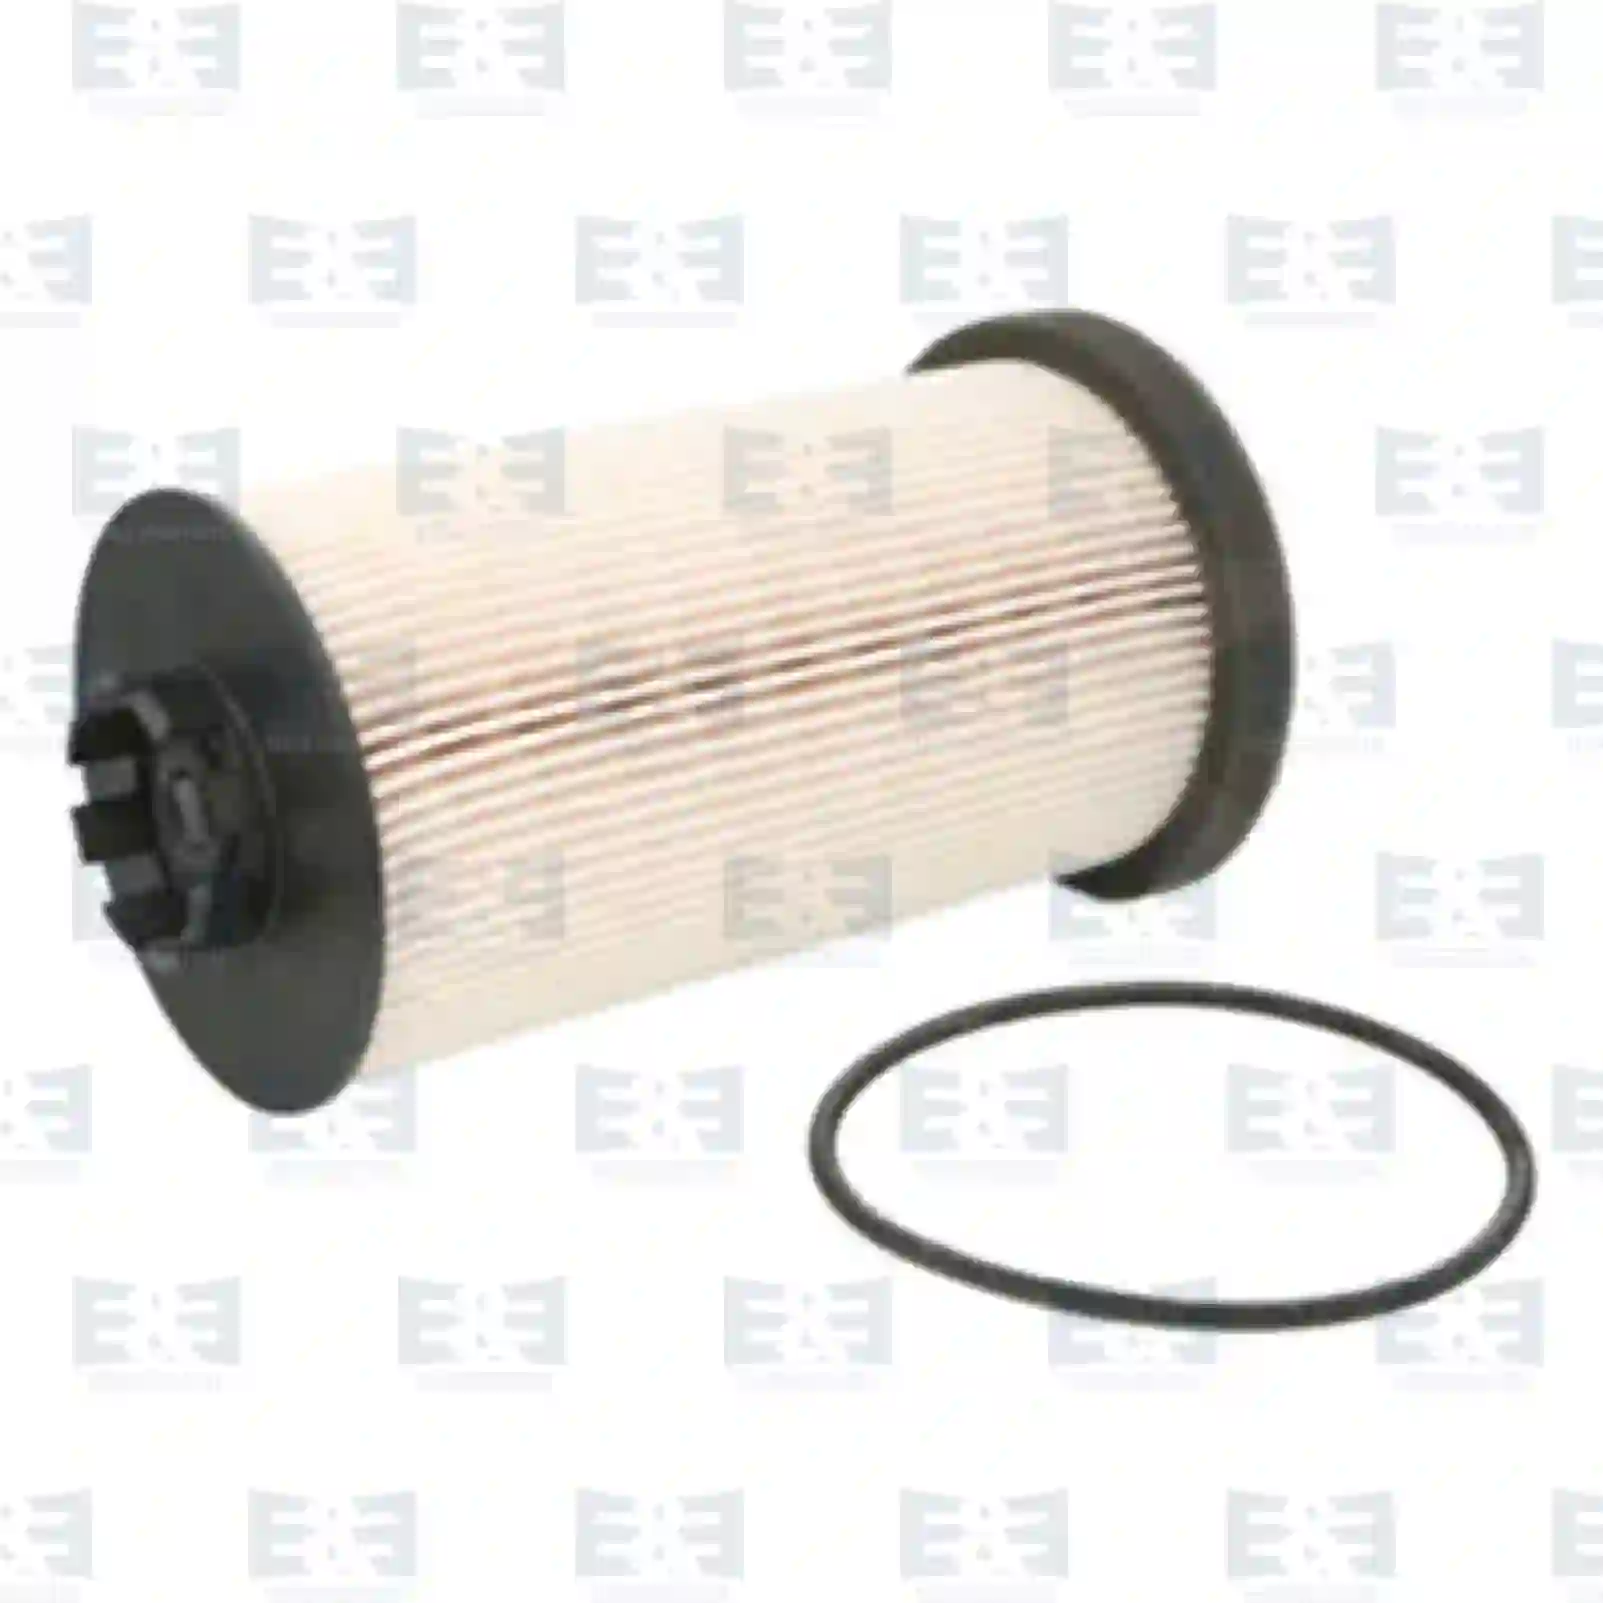  Fuel filter insert, old version || E&E Truck Spare Parts | Truck Spare Parts, Auotomotive Spare Parts